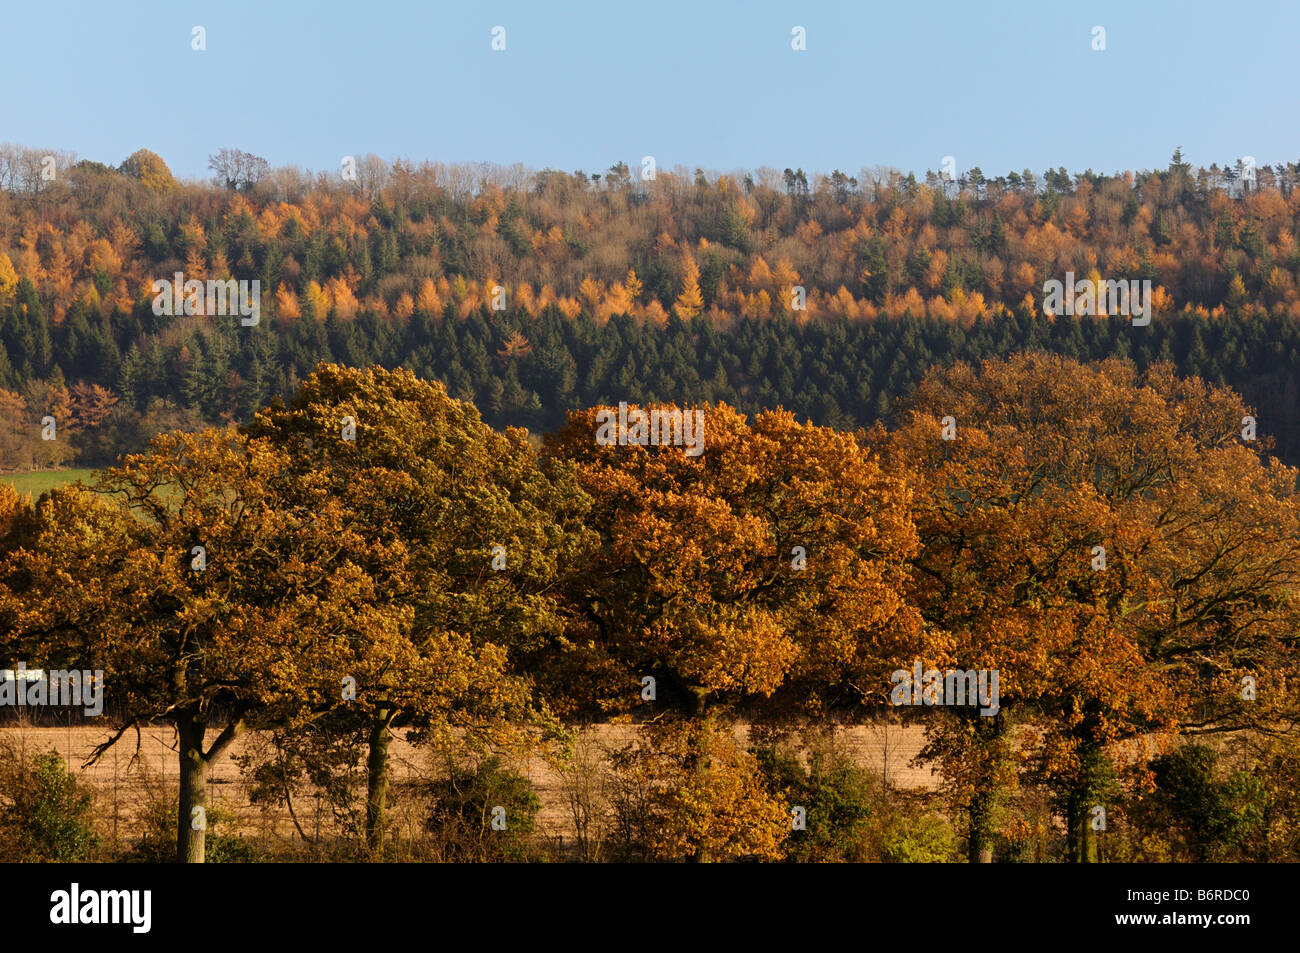 Autumn on Wenlock Edge, Shropshire, England, UK Stock Photo